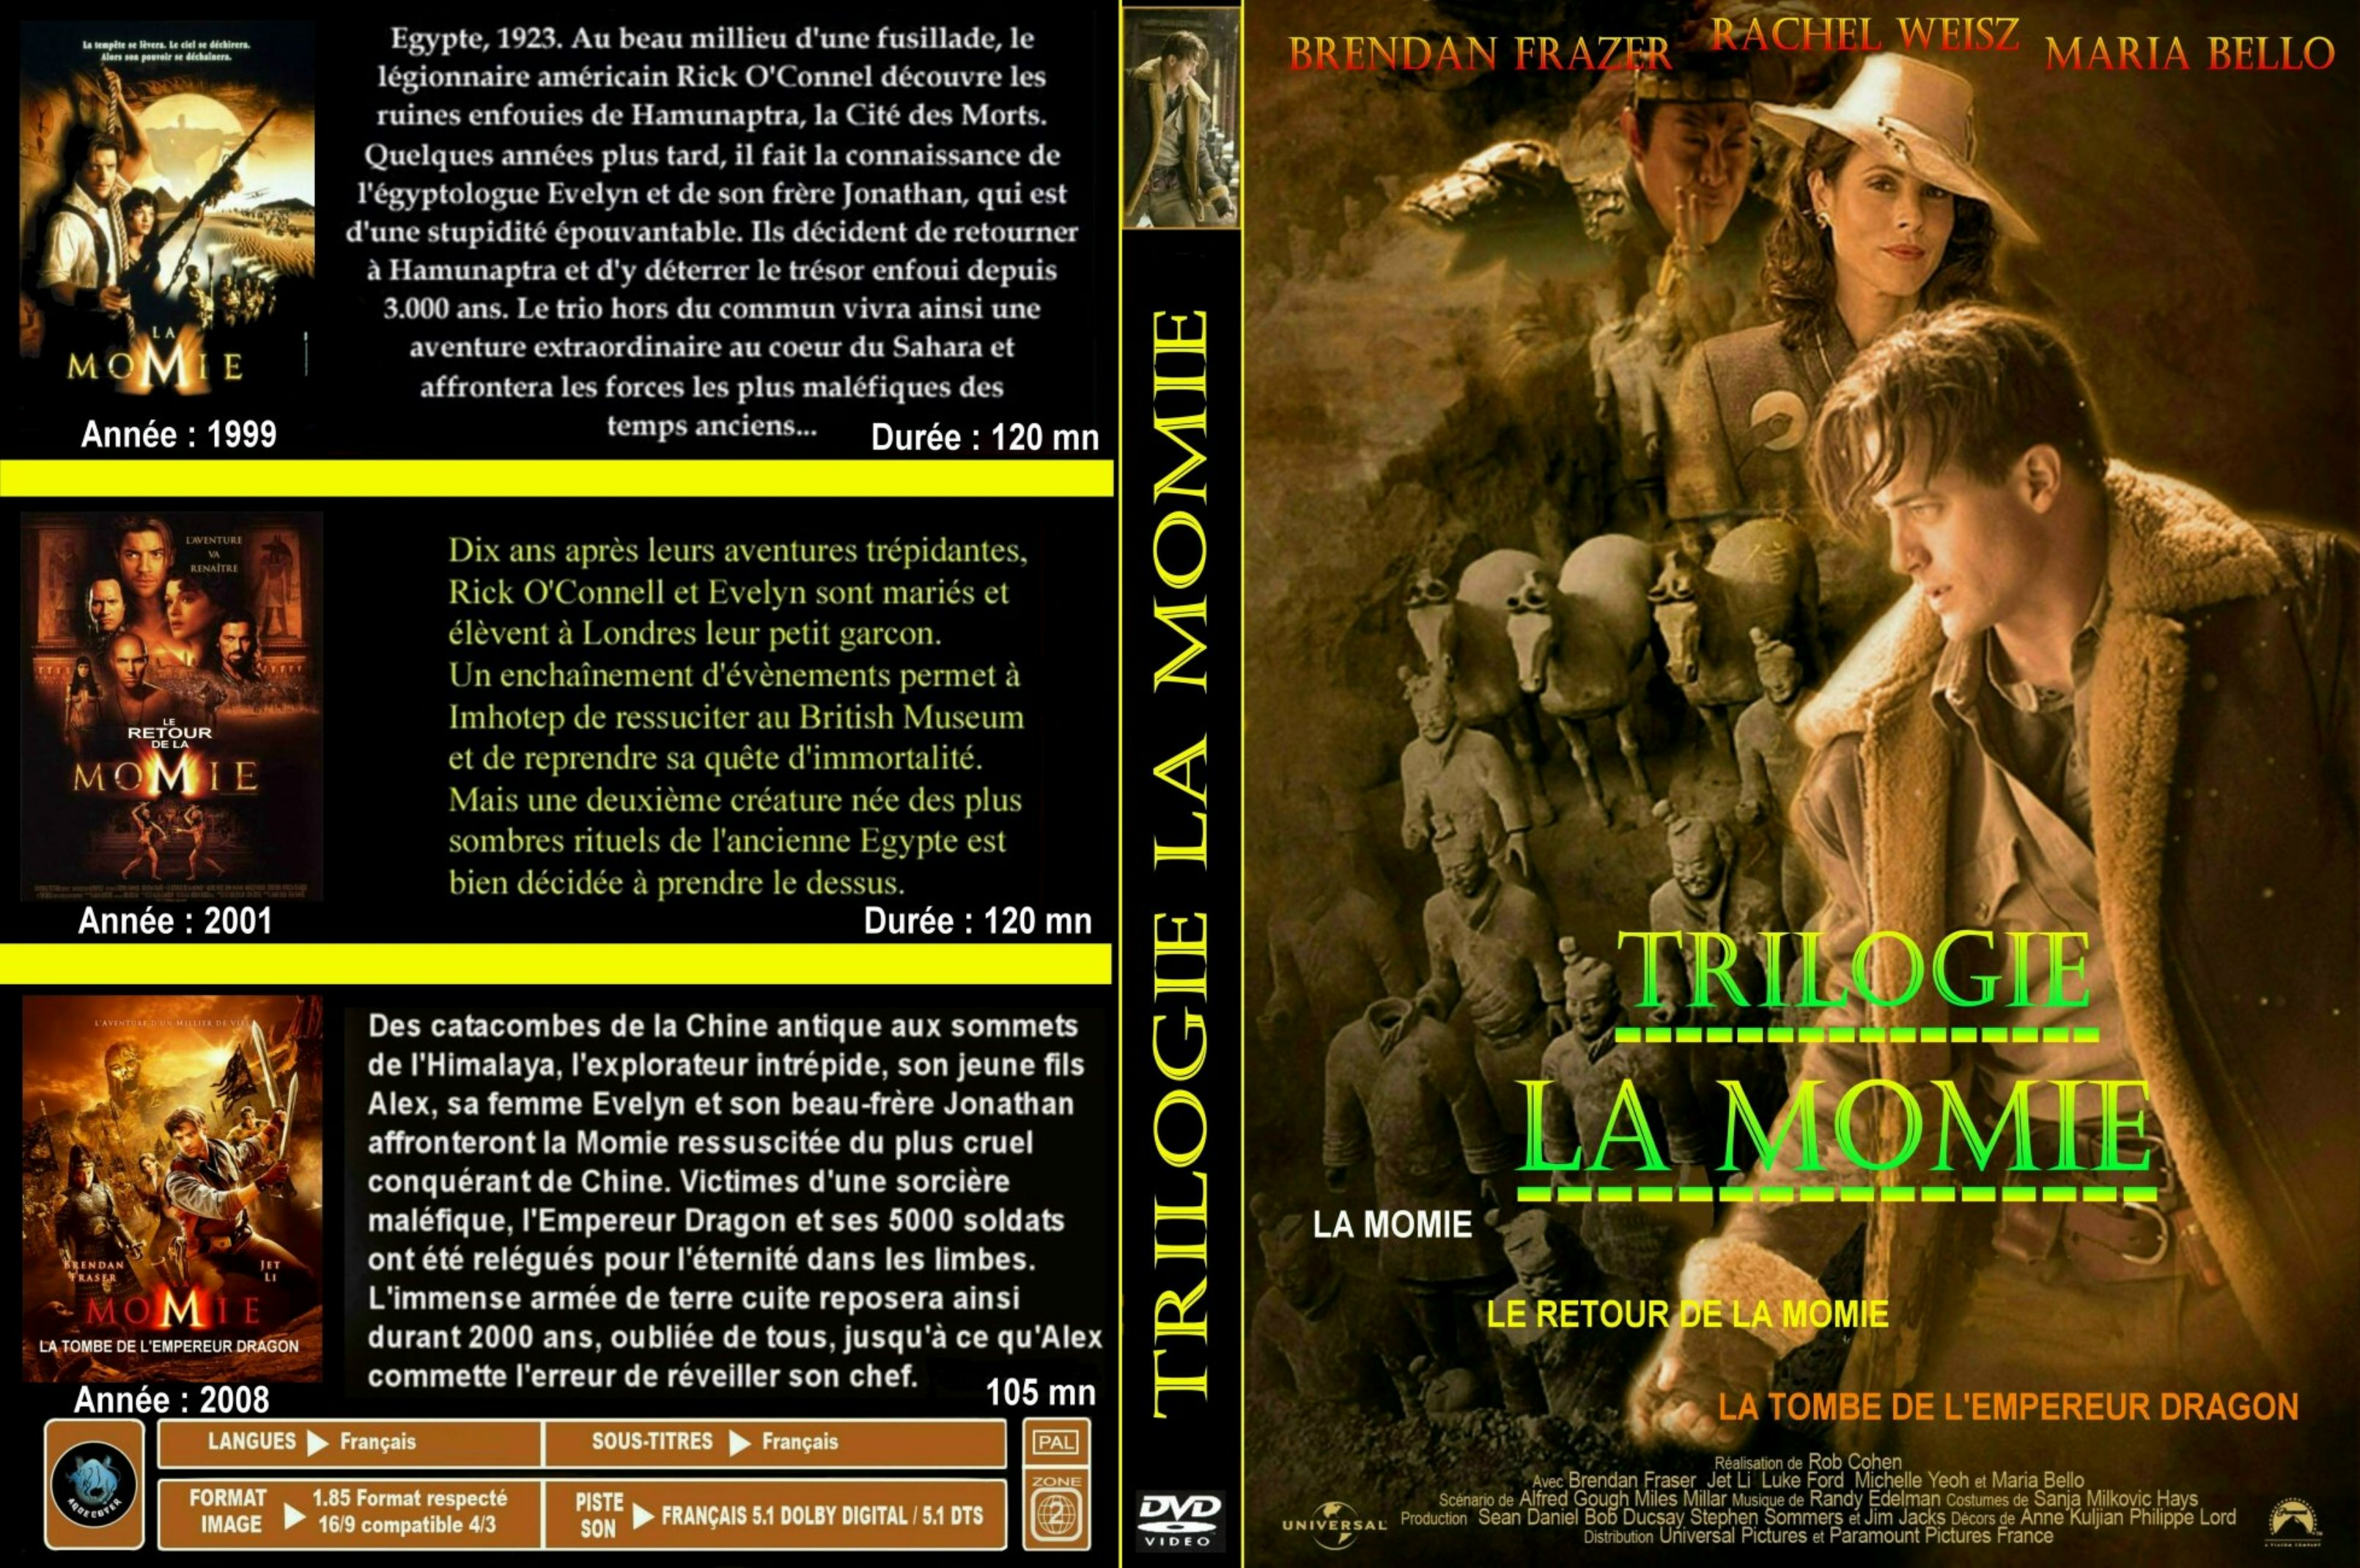 Jaquette DVD La momie (Trilogie) custom